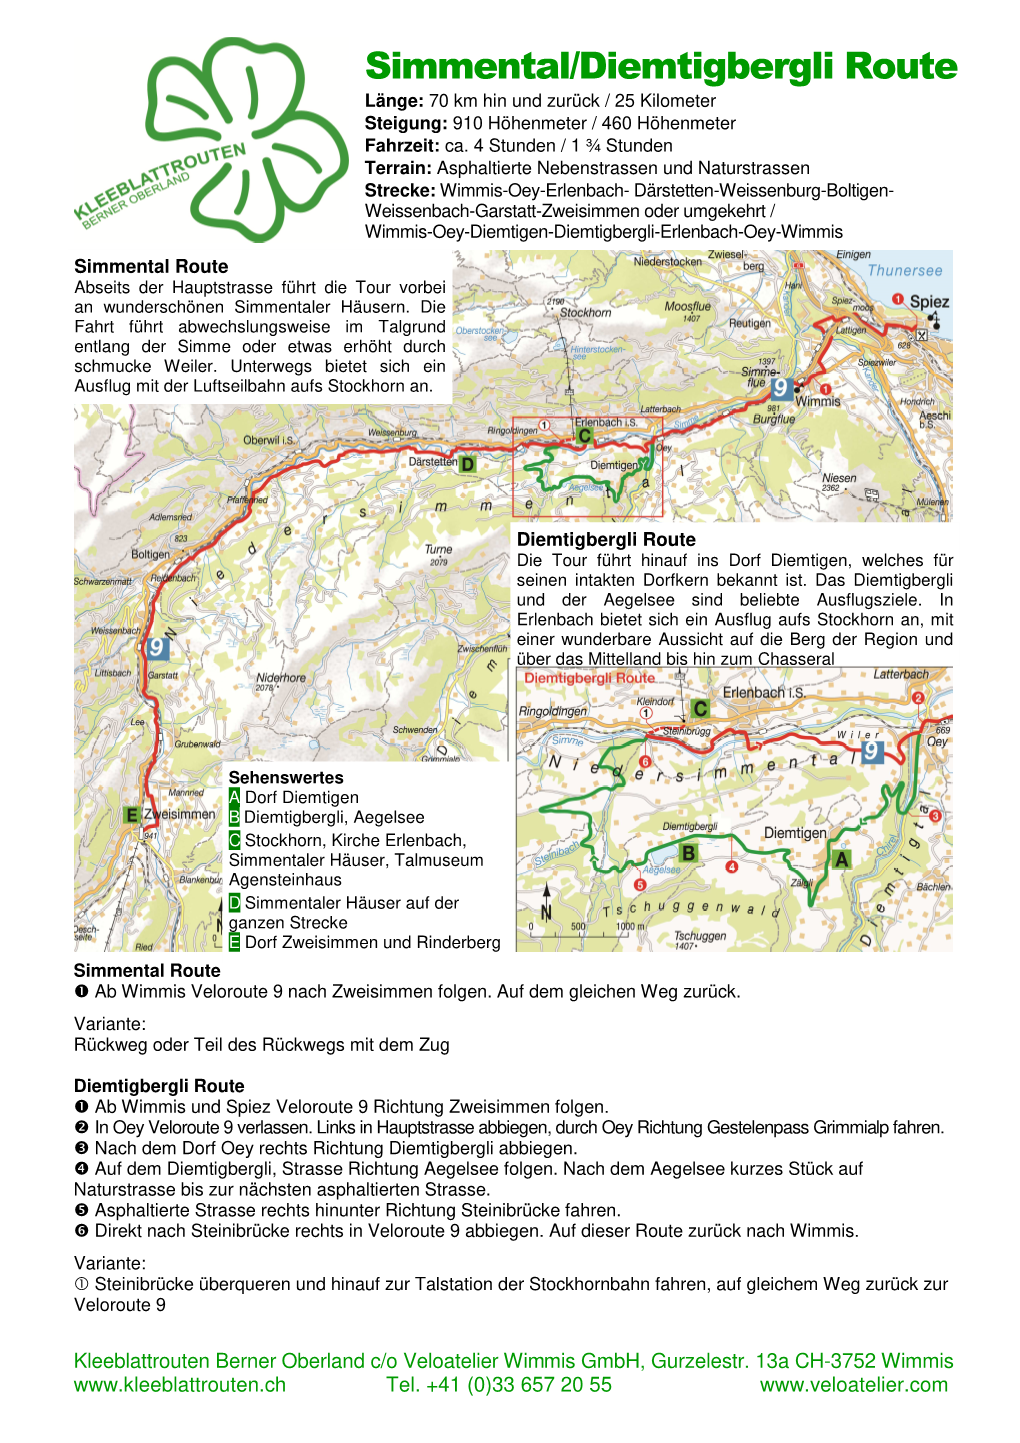 Simmental/Diemtigbergli Route Länge: 70 Km Hin Und Zurück / 25 Kilometer Steigung: 910 Höhenmeter / 460 Höhenmeter Fahrzeit: Ca